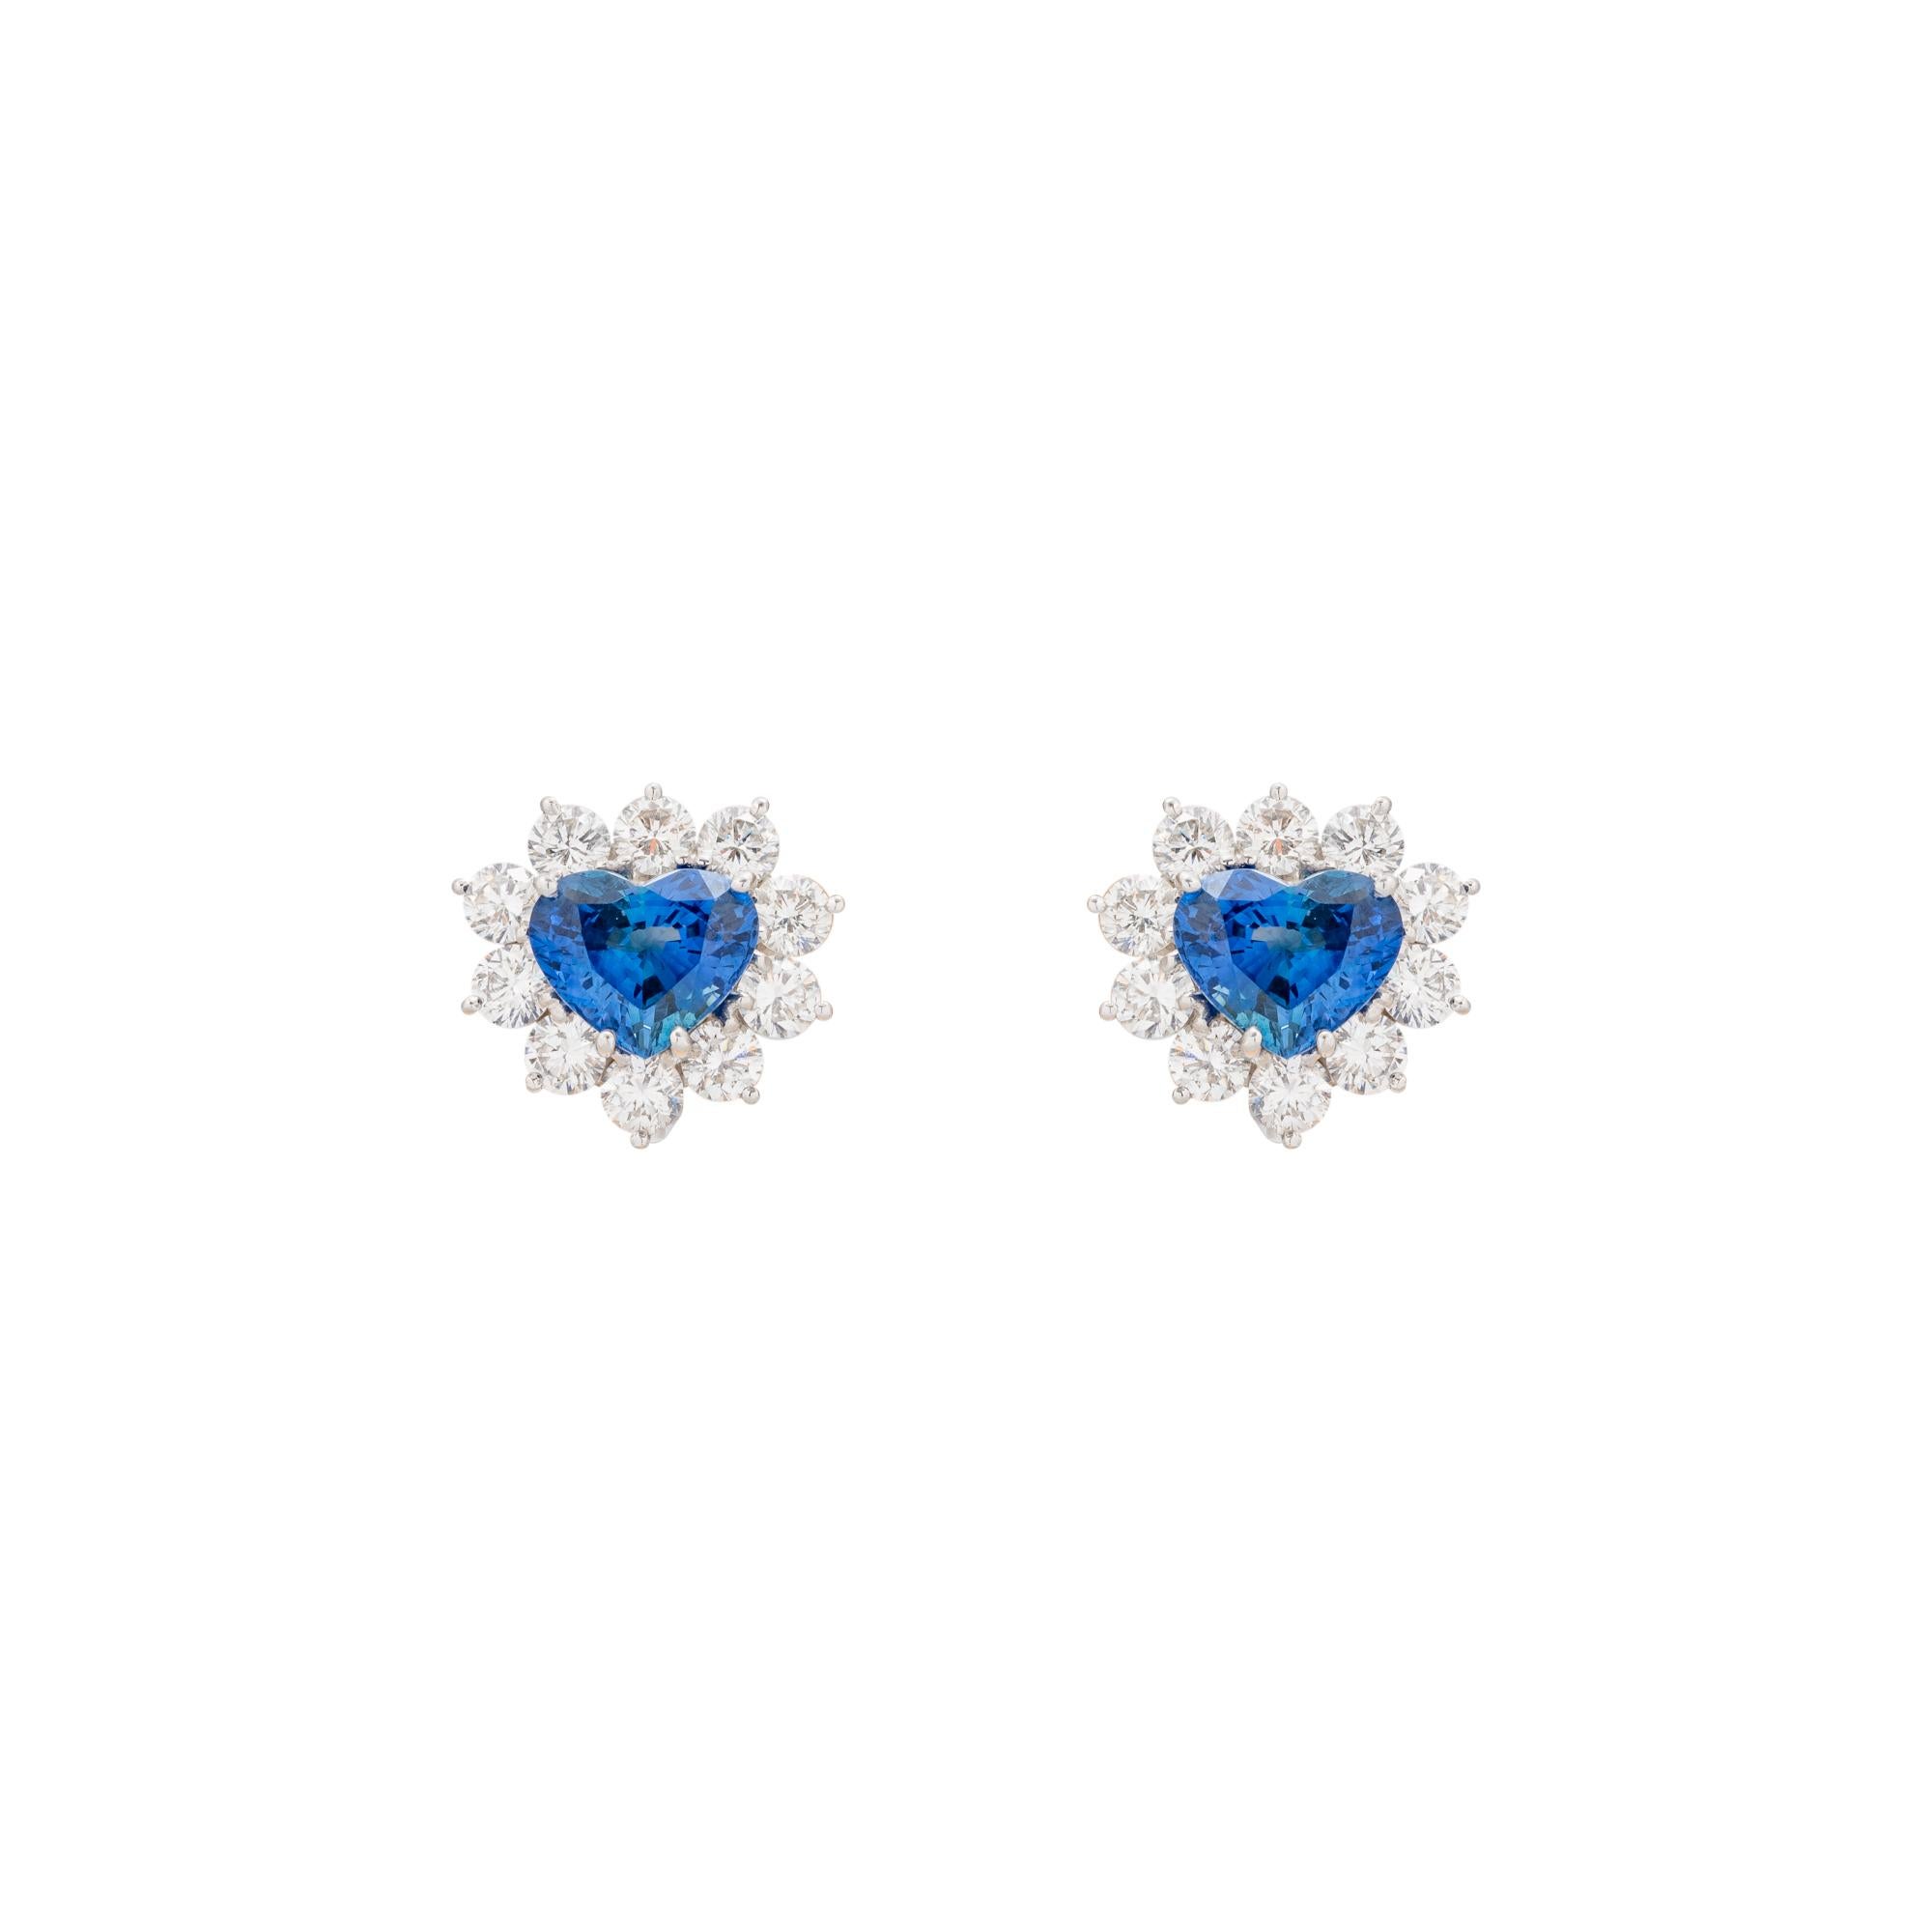 Modern 4.91 Carat Heart Shaped Sapphire Diamond Earrings For Sale